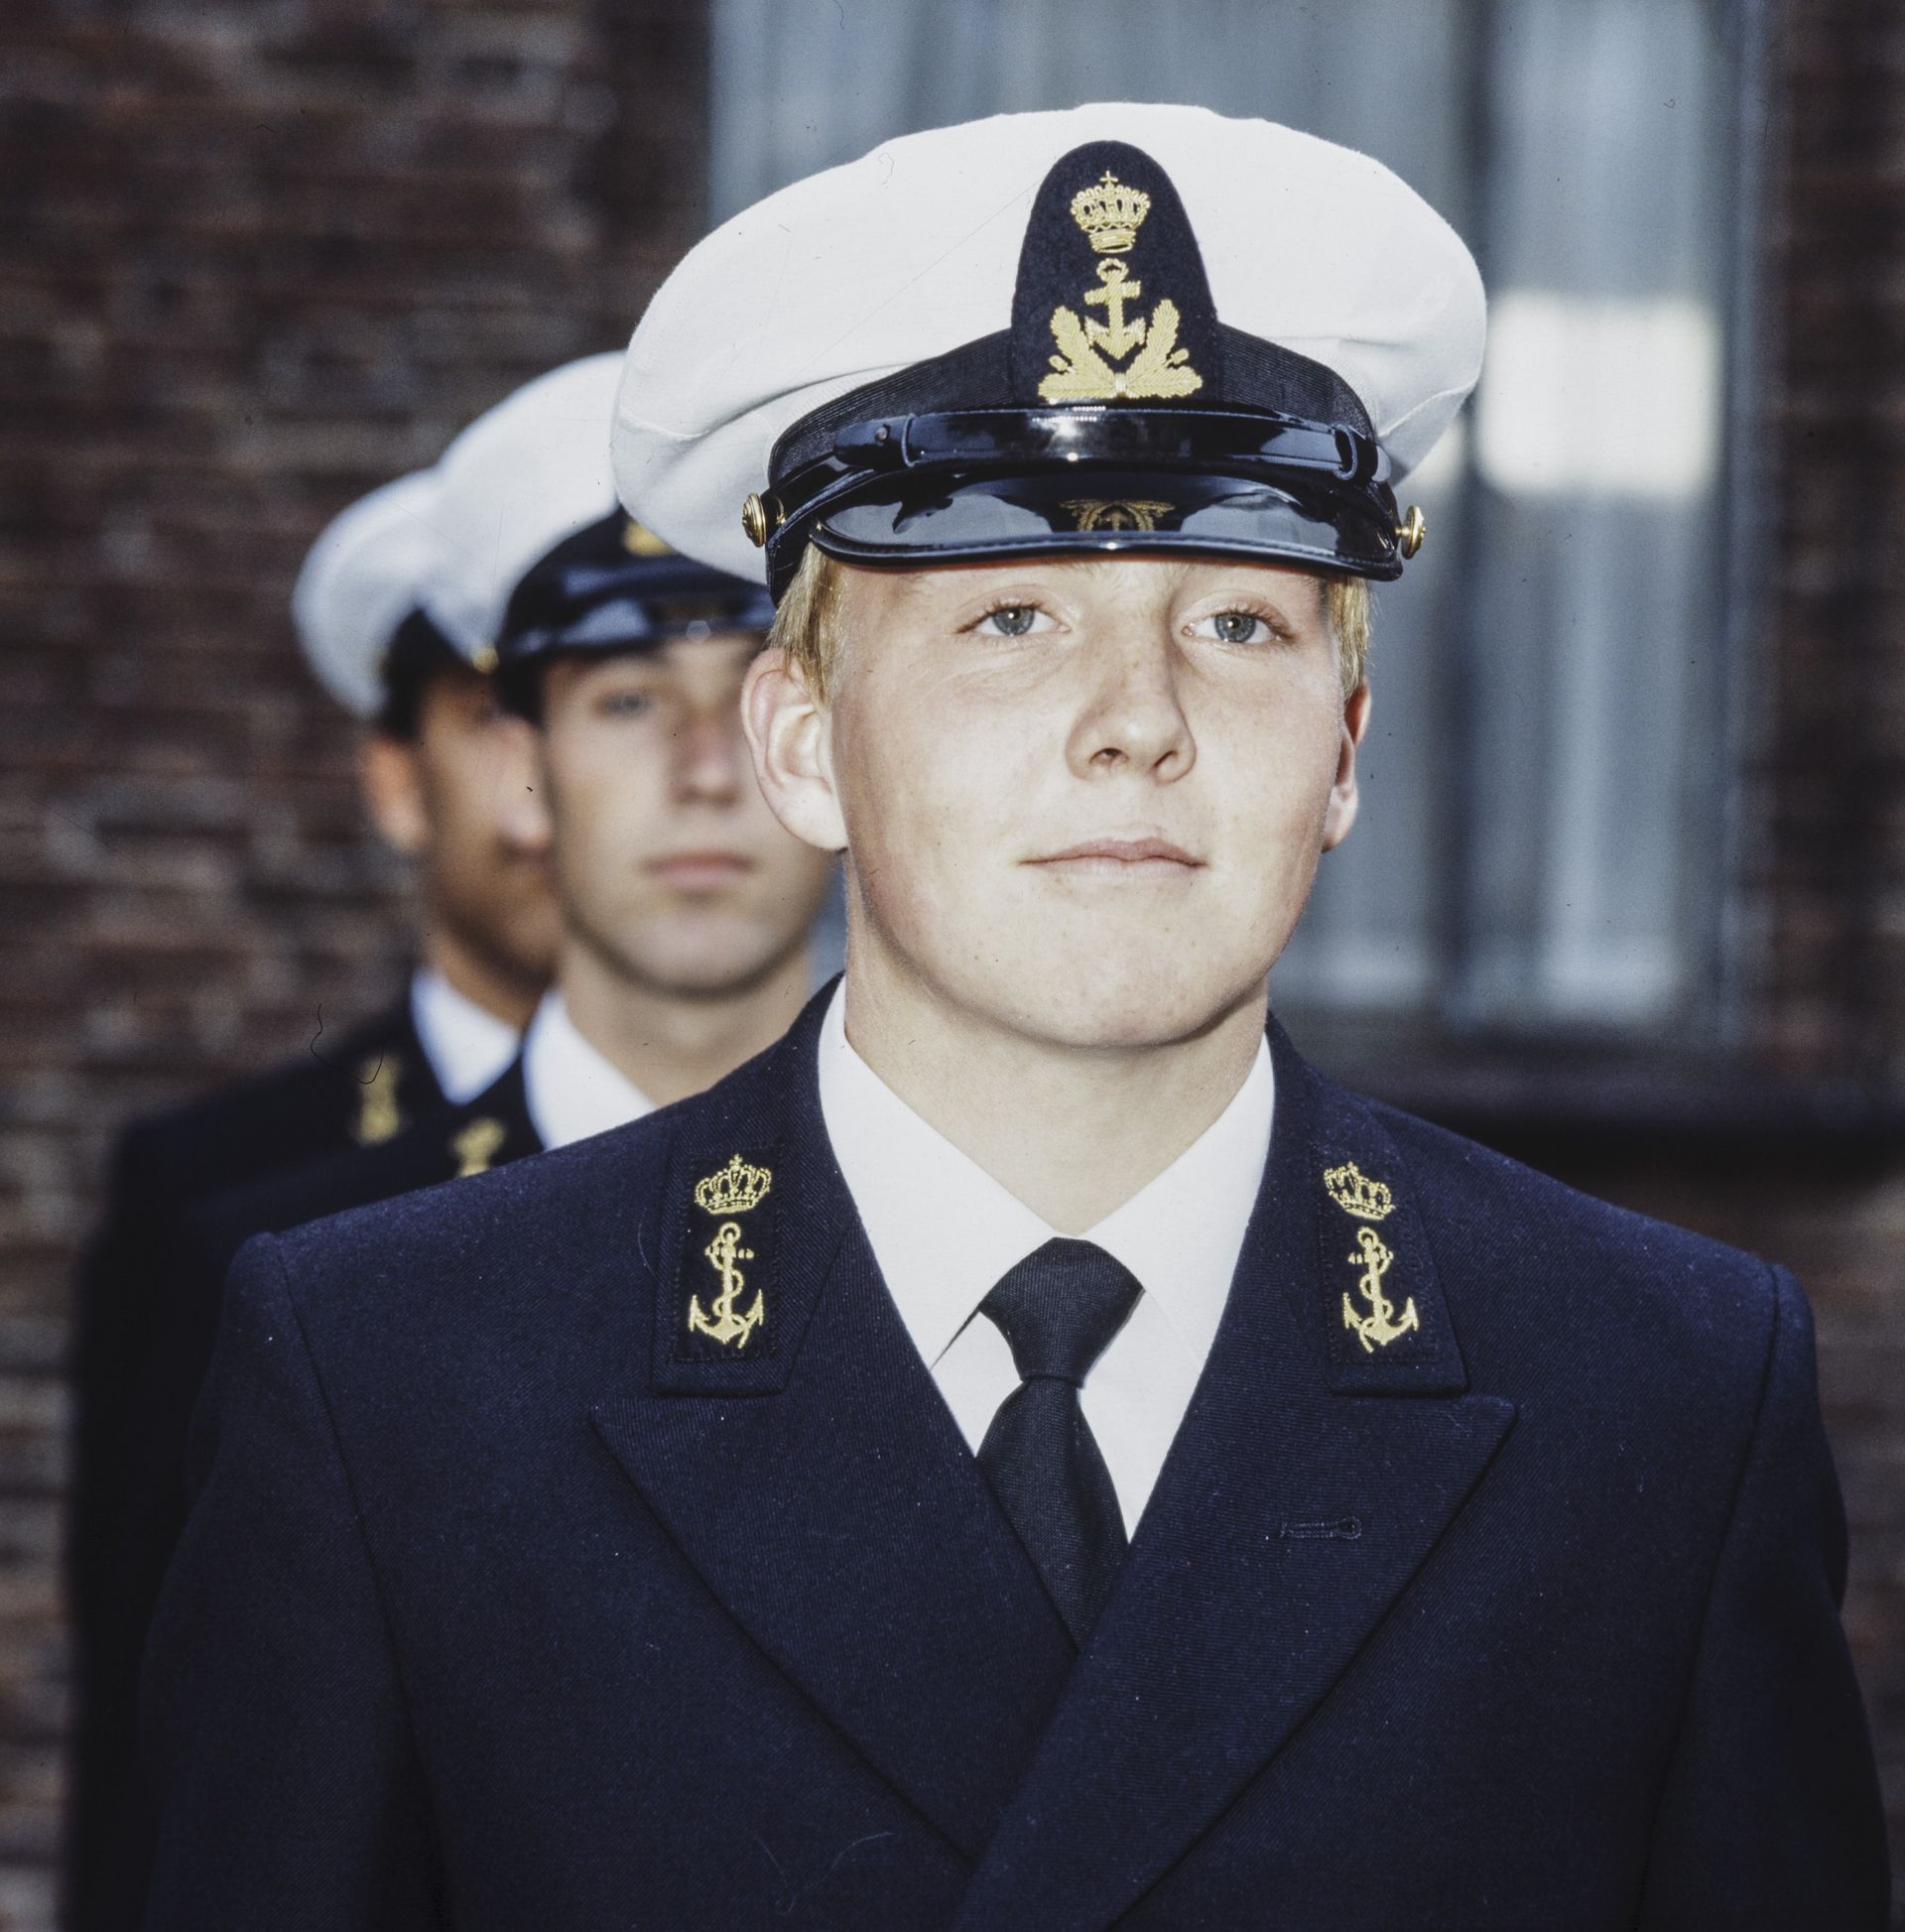 1985 - Prins Willem-Alexander in opleiding bij de marine